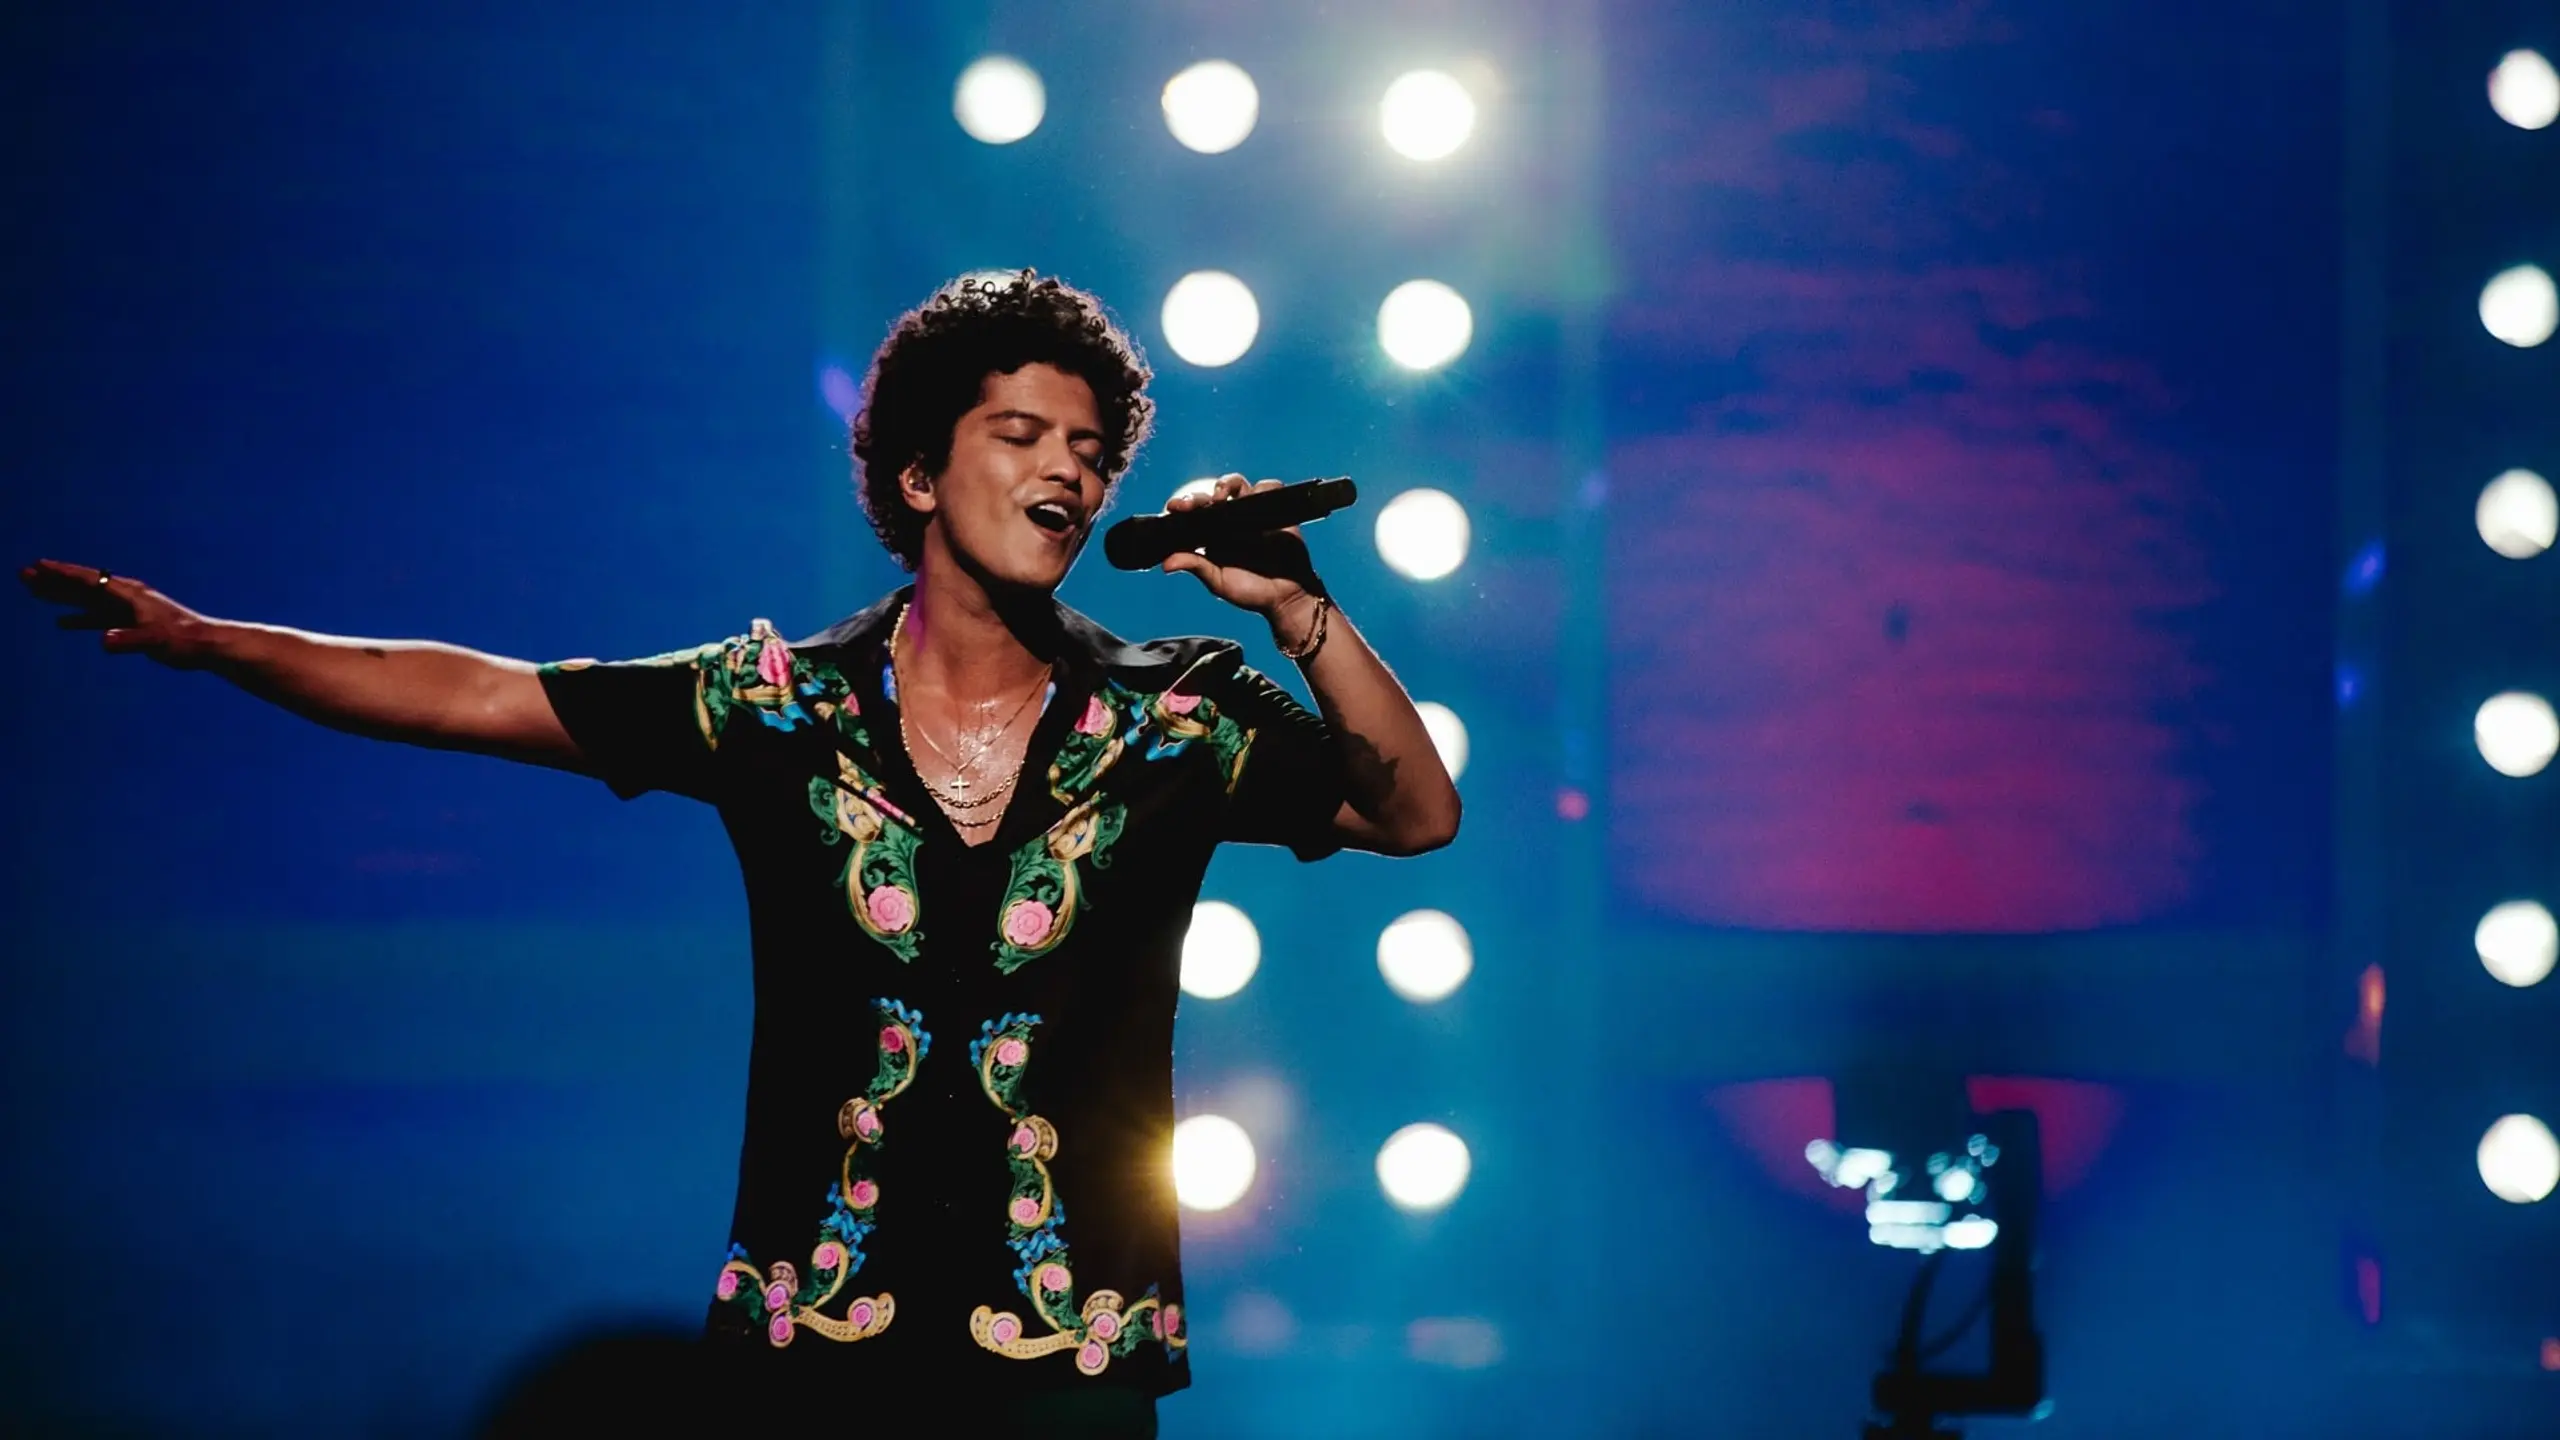 Bruno Mars: 24K Magic Live at the Apollo